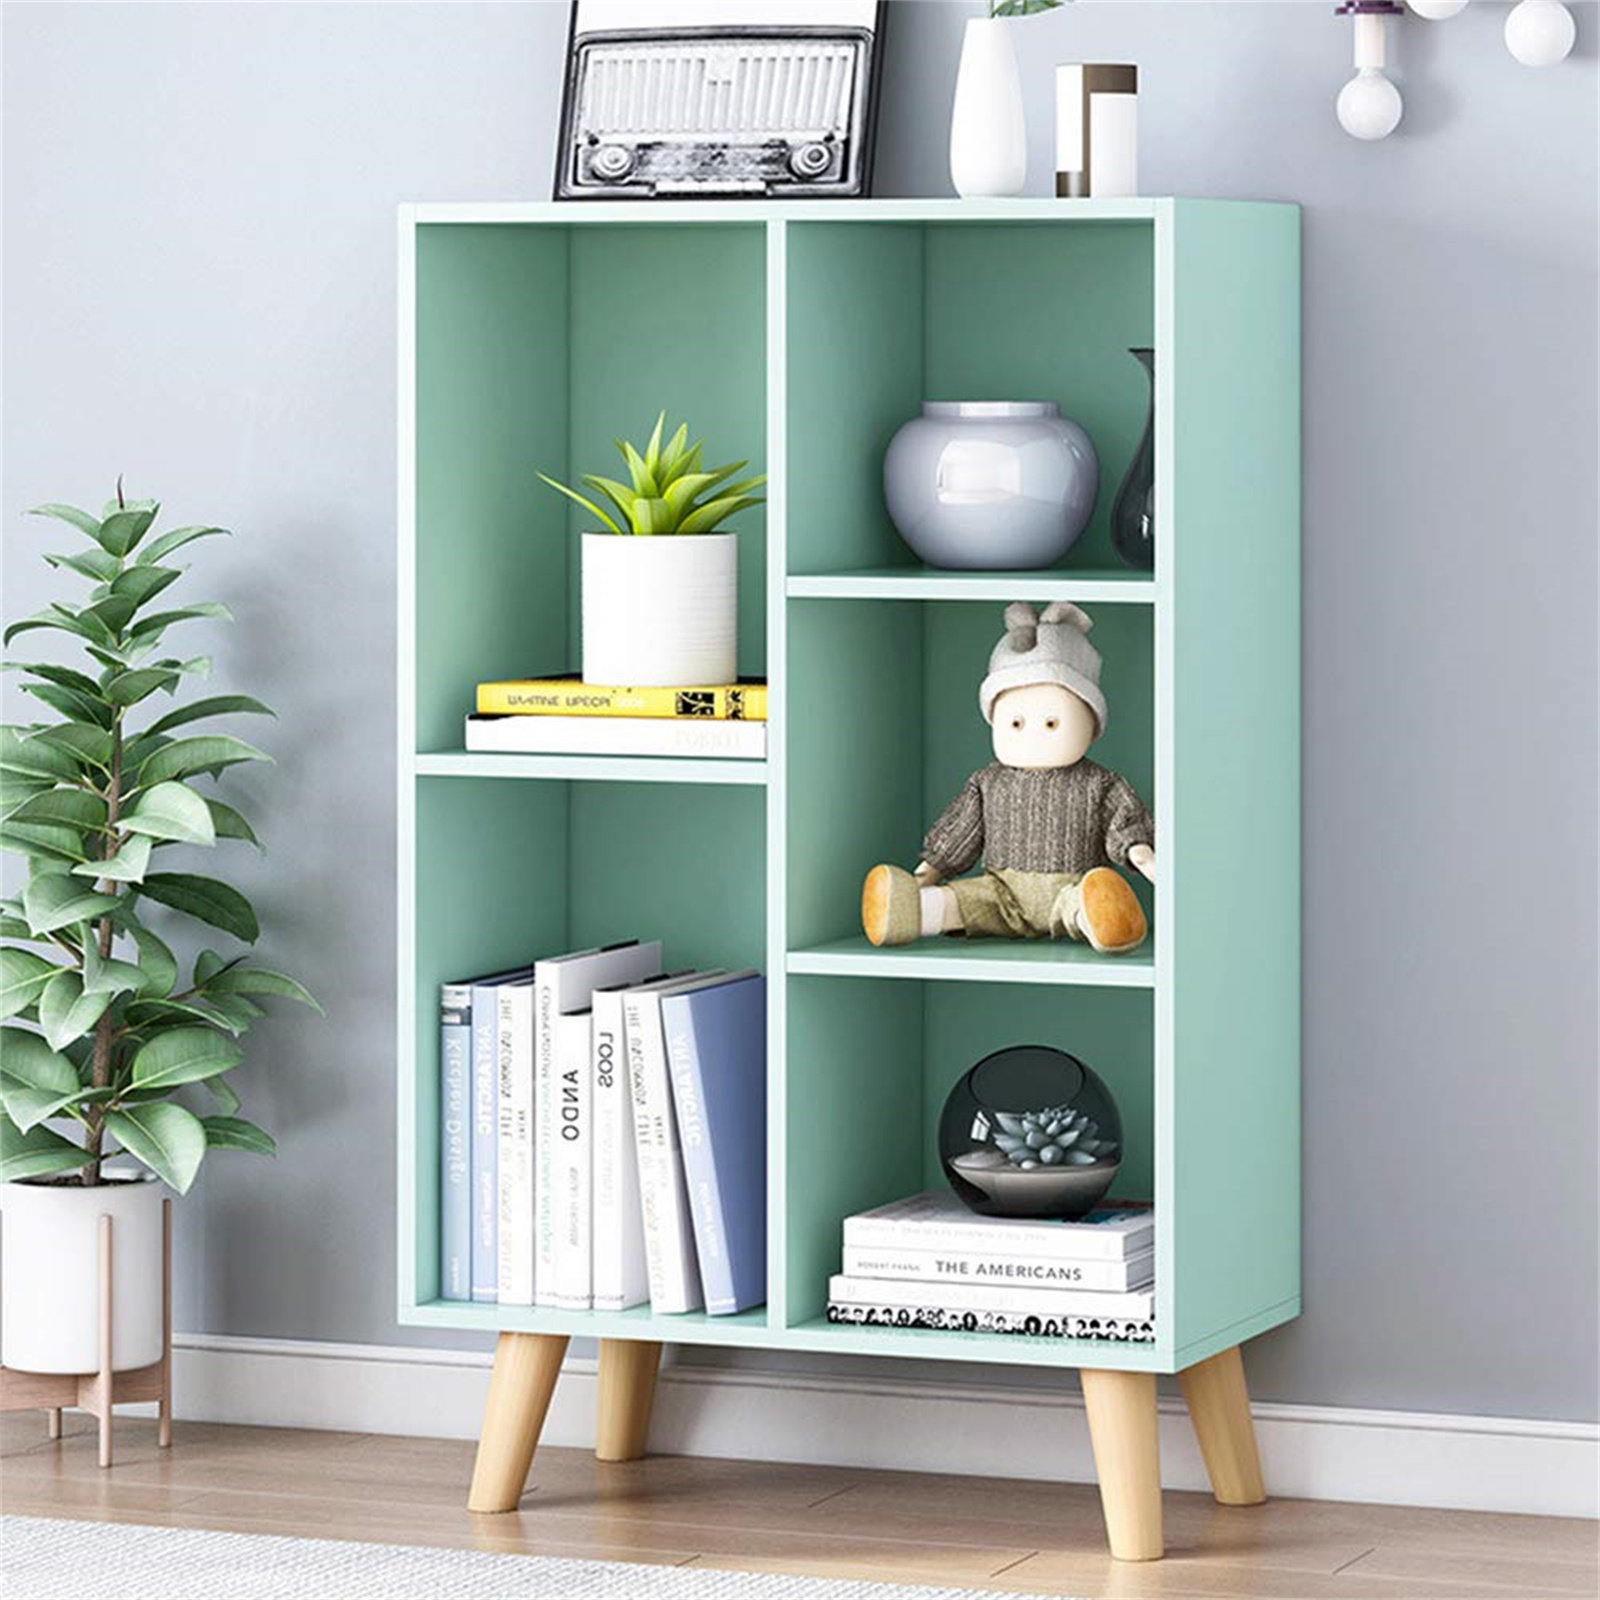 Wooden Open Shelf Bookcase - 3 Tier Floor Display Cabinet Shelf with Legs, 5 Cube Bookshelves Corrigan Studio Color: Green